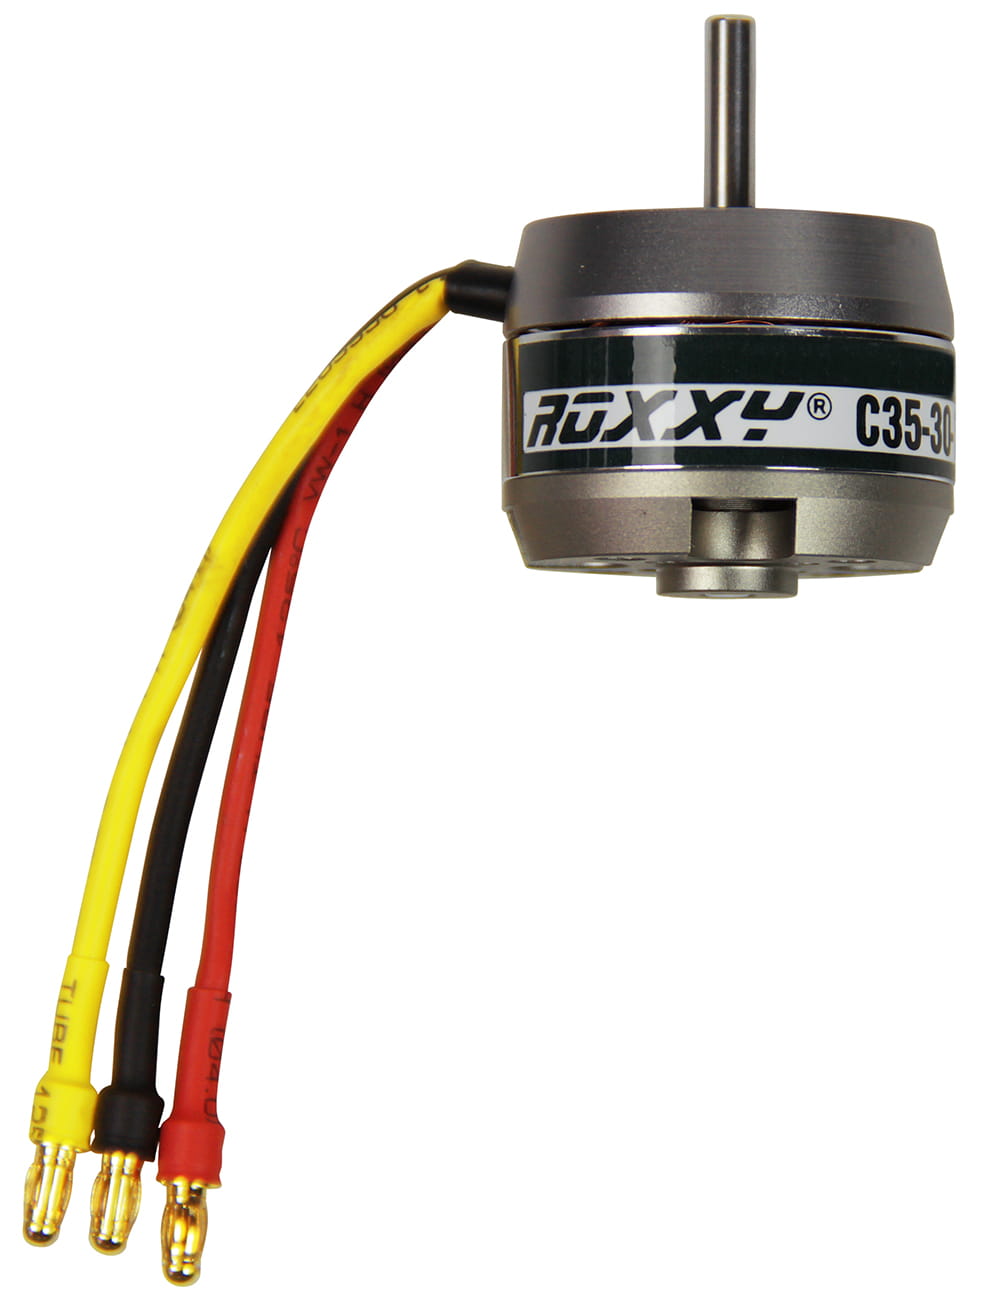 Multiplex ROXXY Brushless Motor BL Outrunner C35-30-500kV